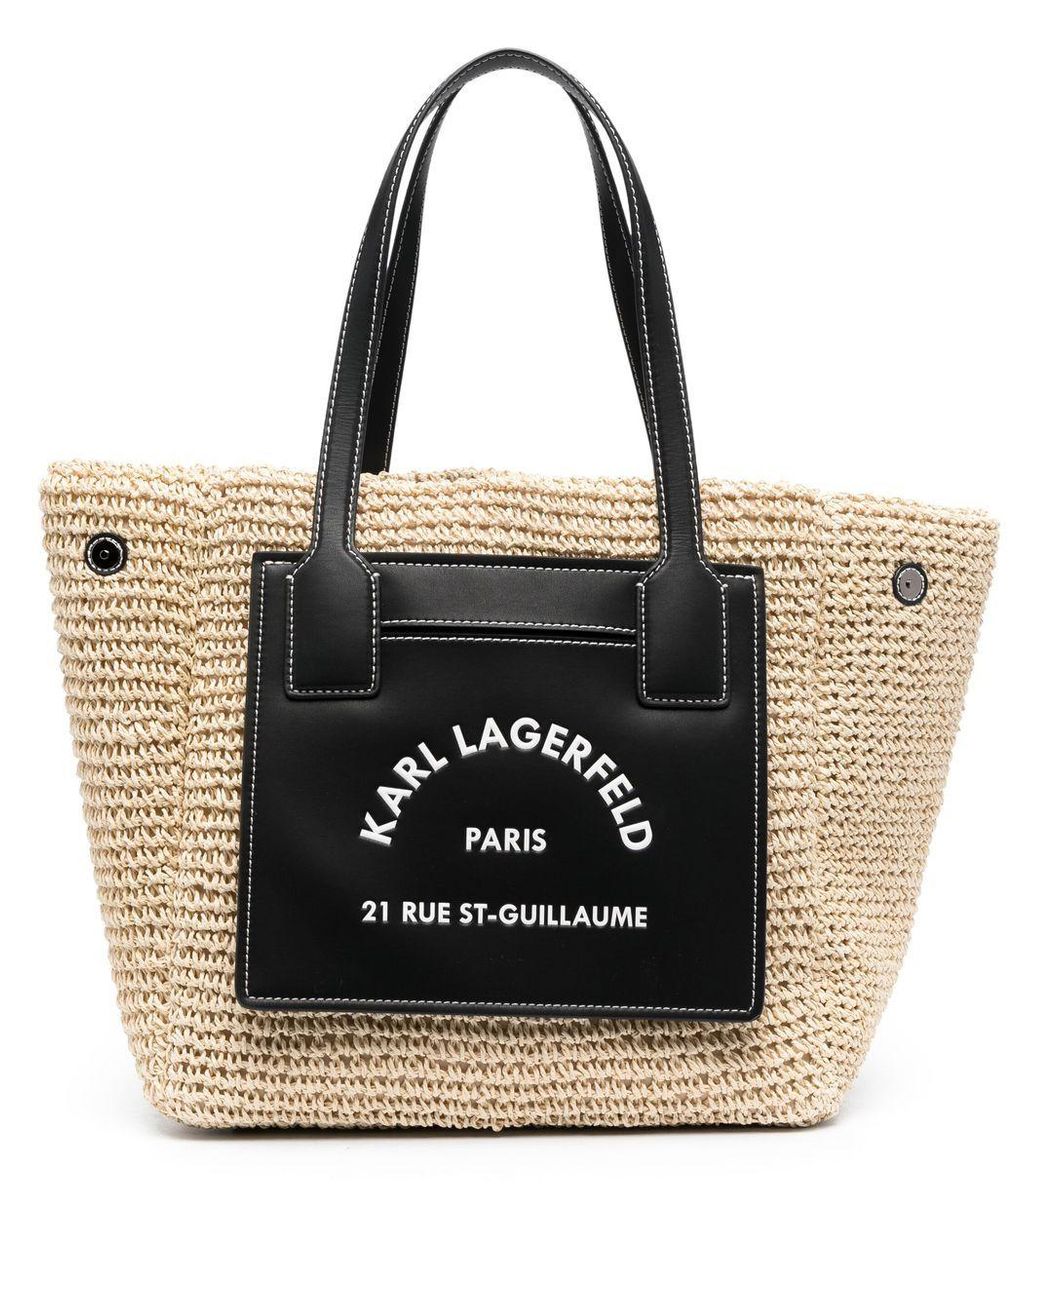 Karl Lagerfeld Rue St Guillaume Laptop Sleeve Bag